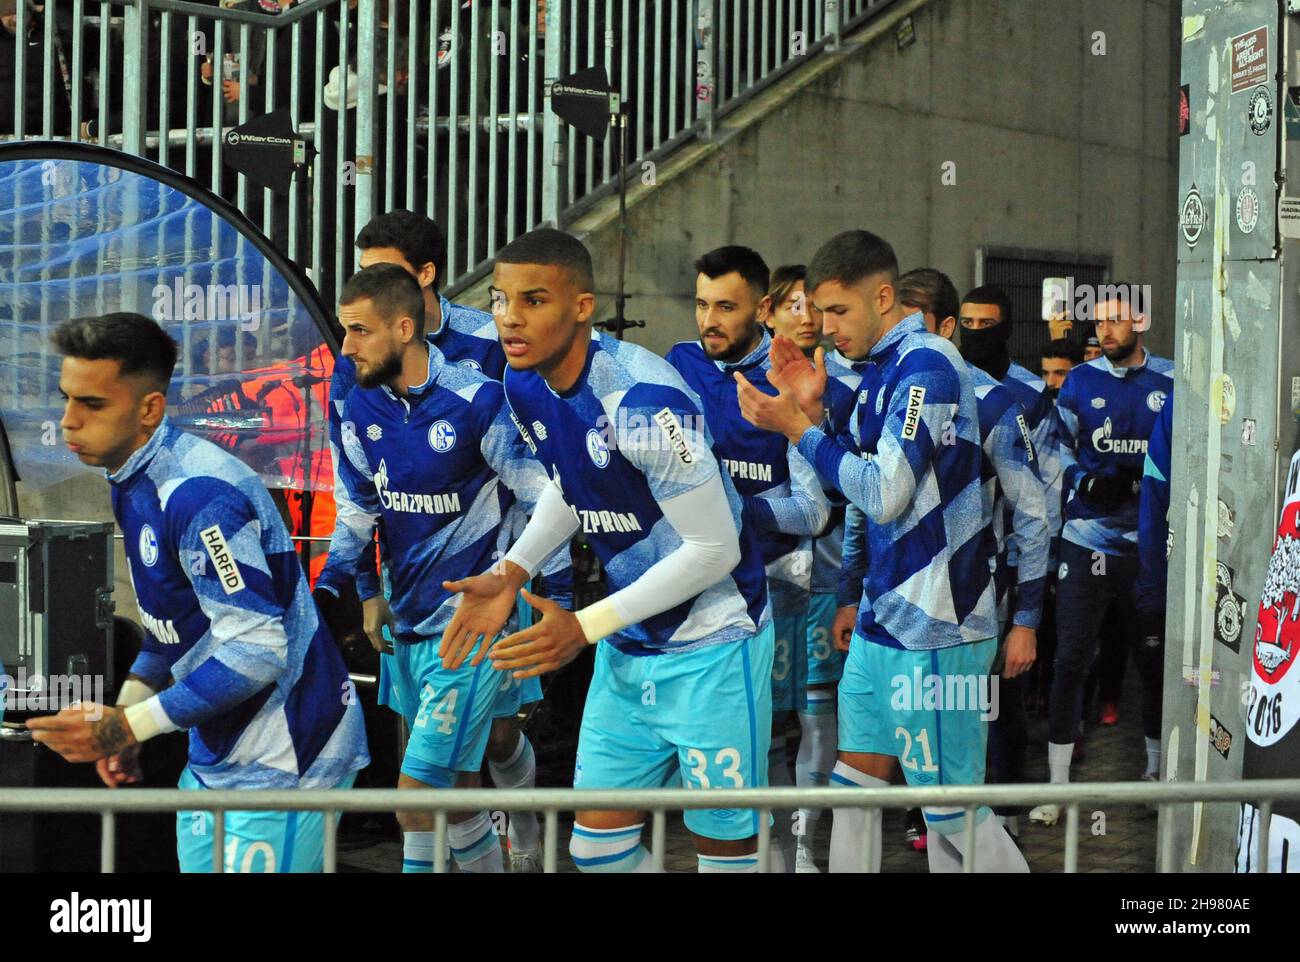 Einlauf der Mannschaft des FC Schalke 04 vor dem Match gegen den FC St. Pauli am Hamburger Millerntor Stock Photo